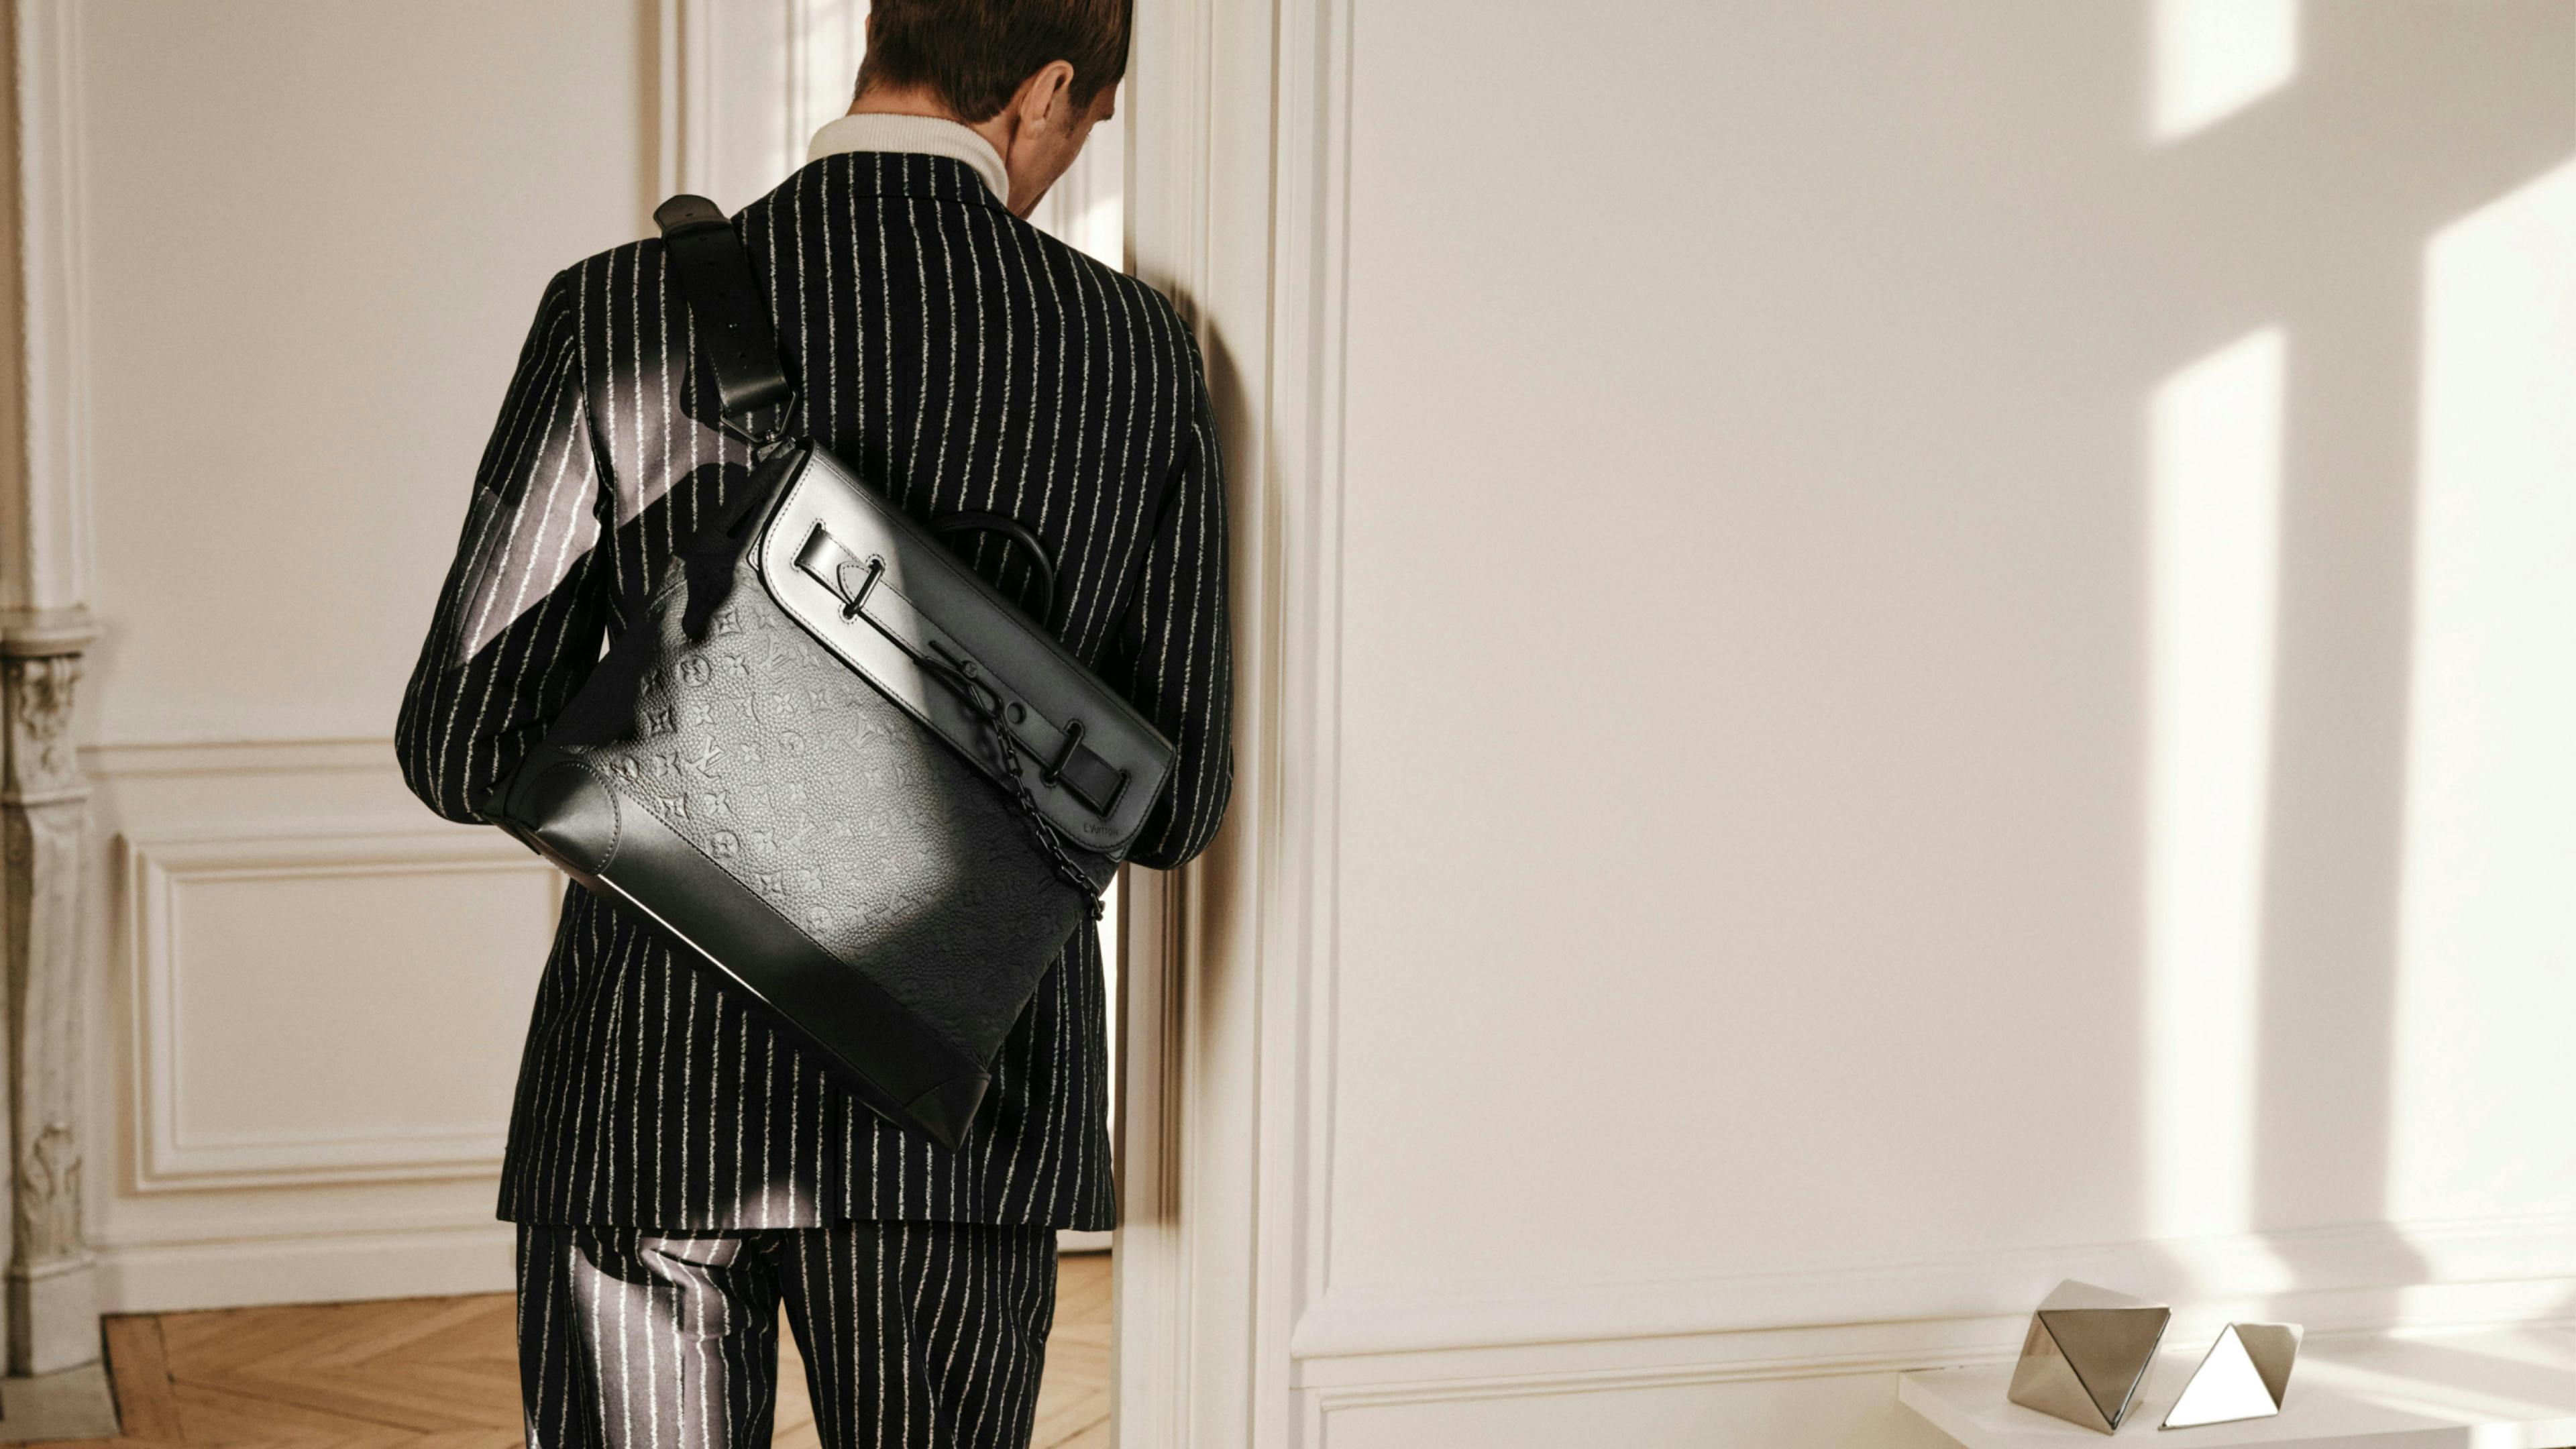 person human bag handbag accessories accessory briefcase